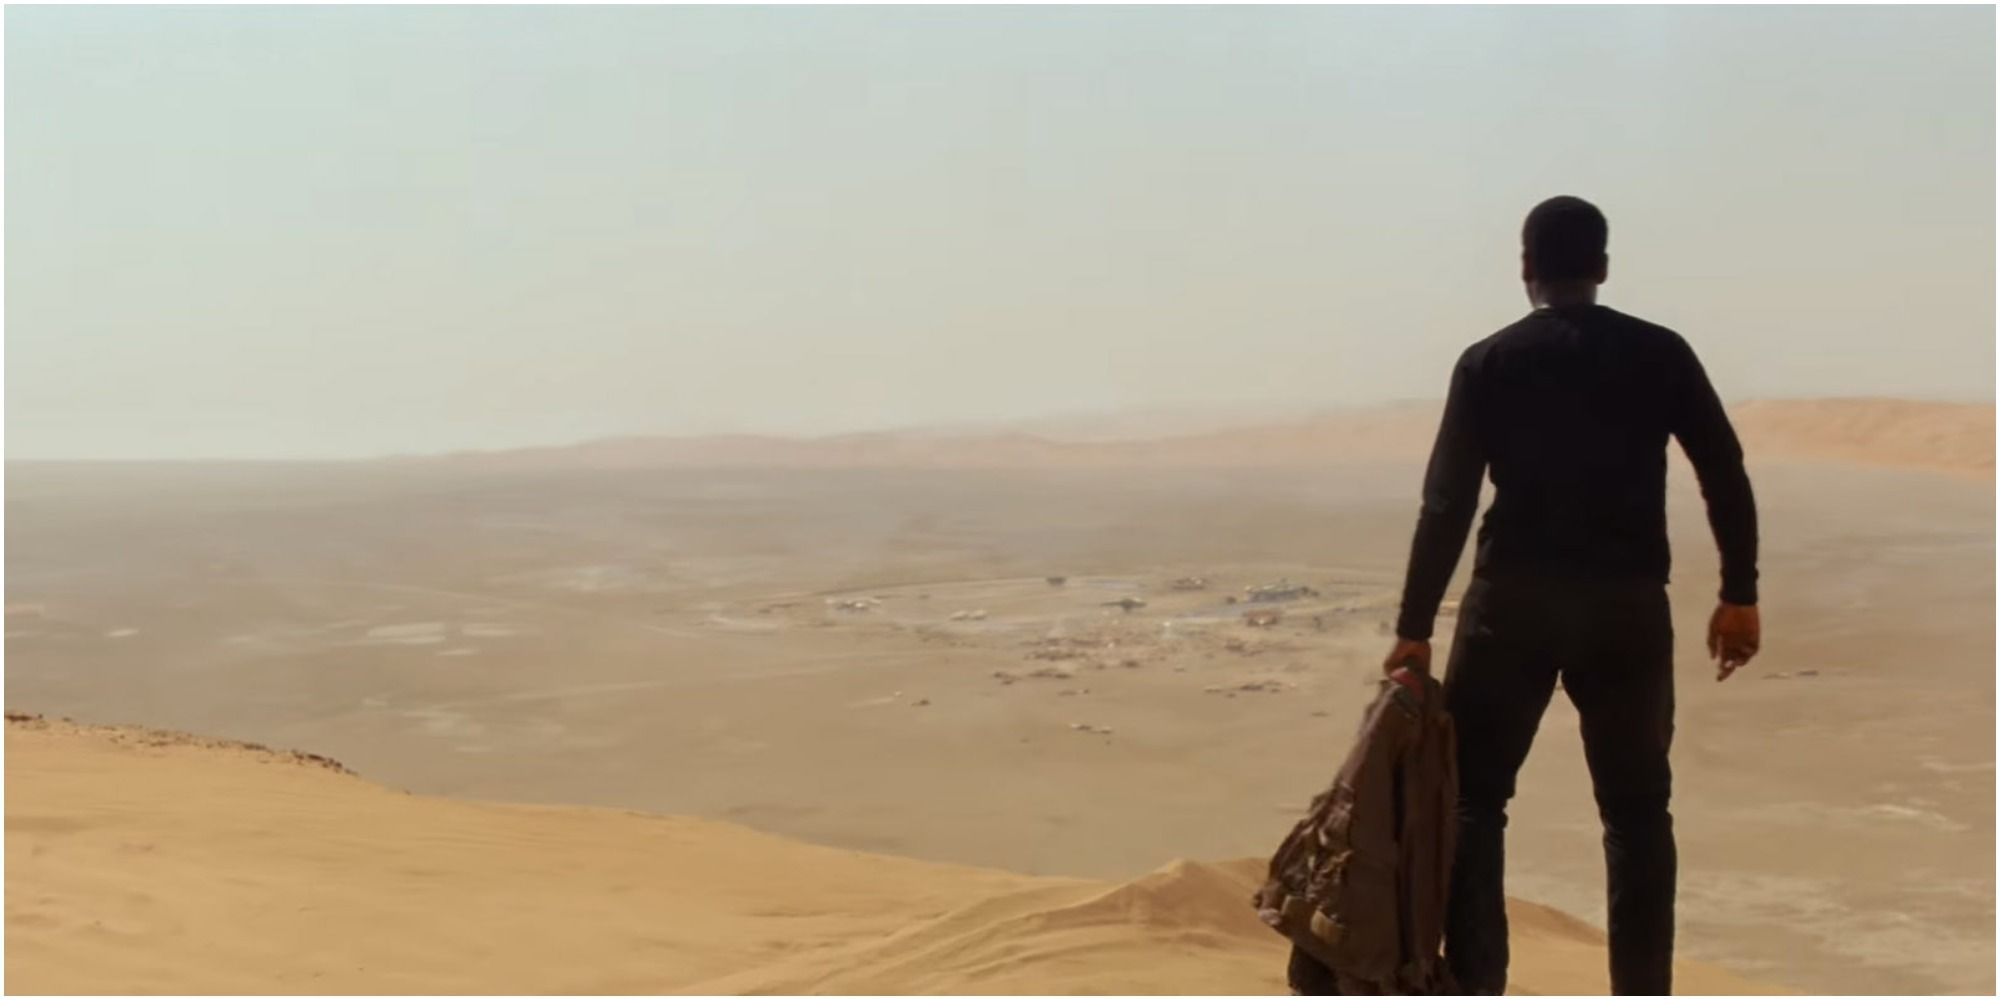 Finn looking out on a desert on Jakku